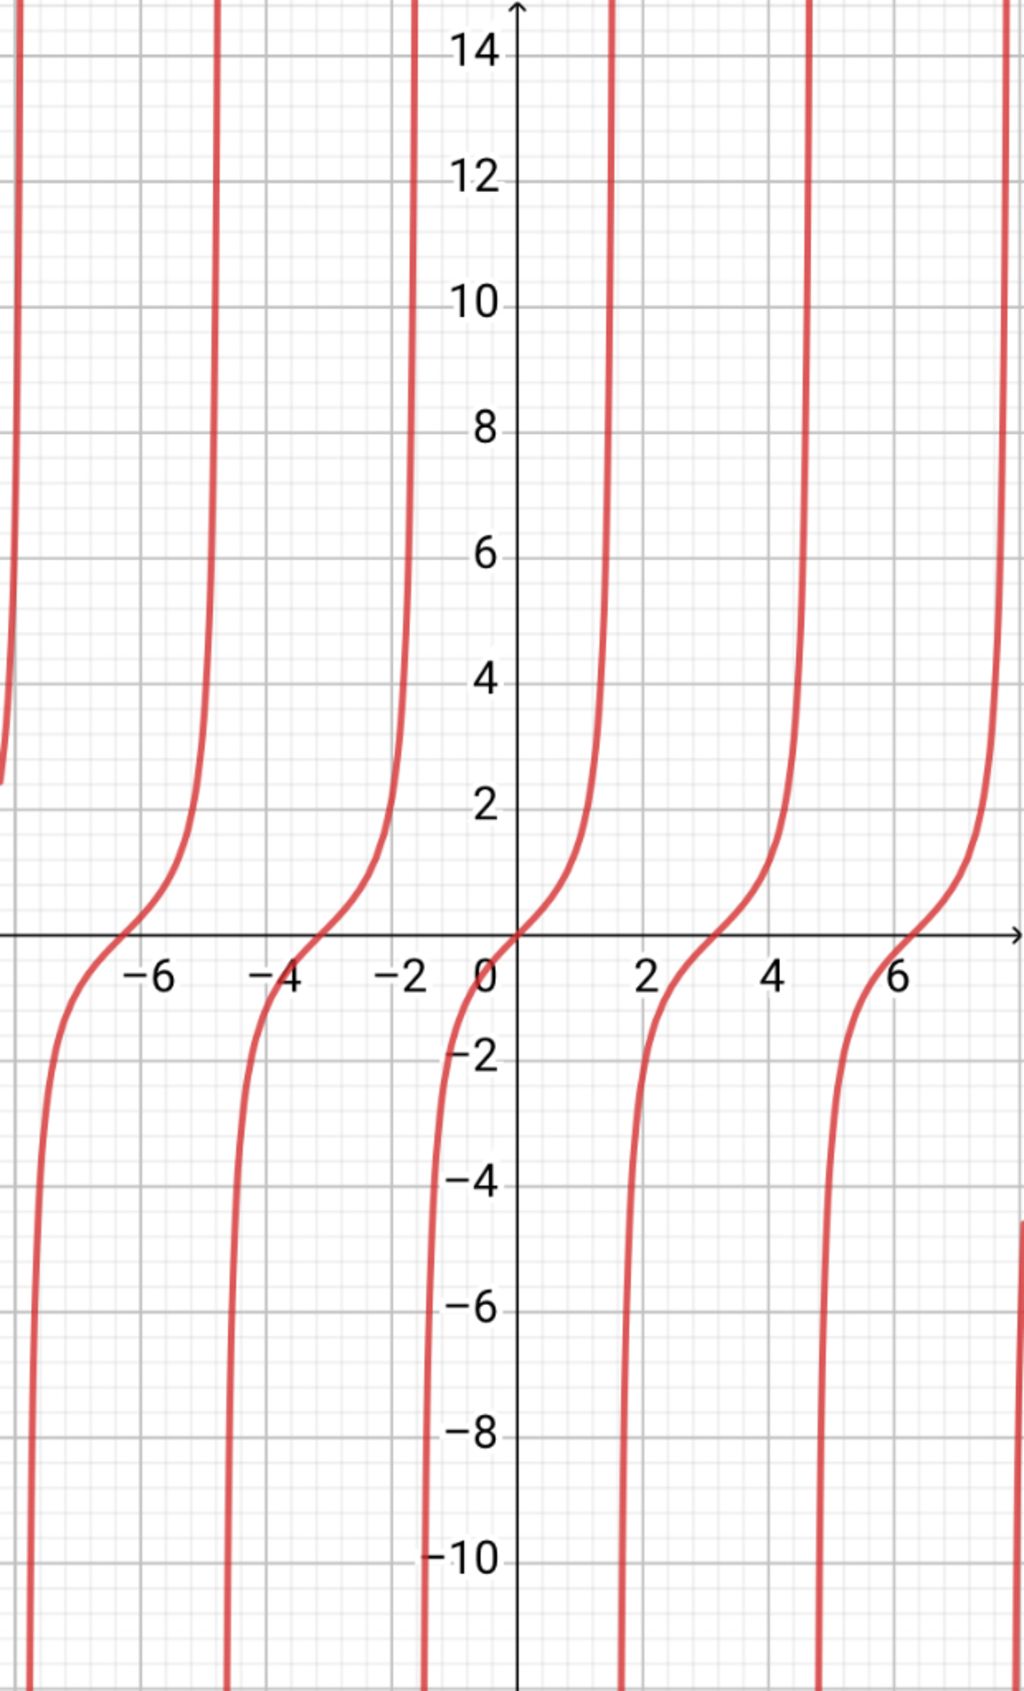 Hướng dẫn cách vẽ đồ thị hàm số y tanx một cách đơn giản và dễ hiểu